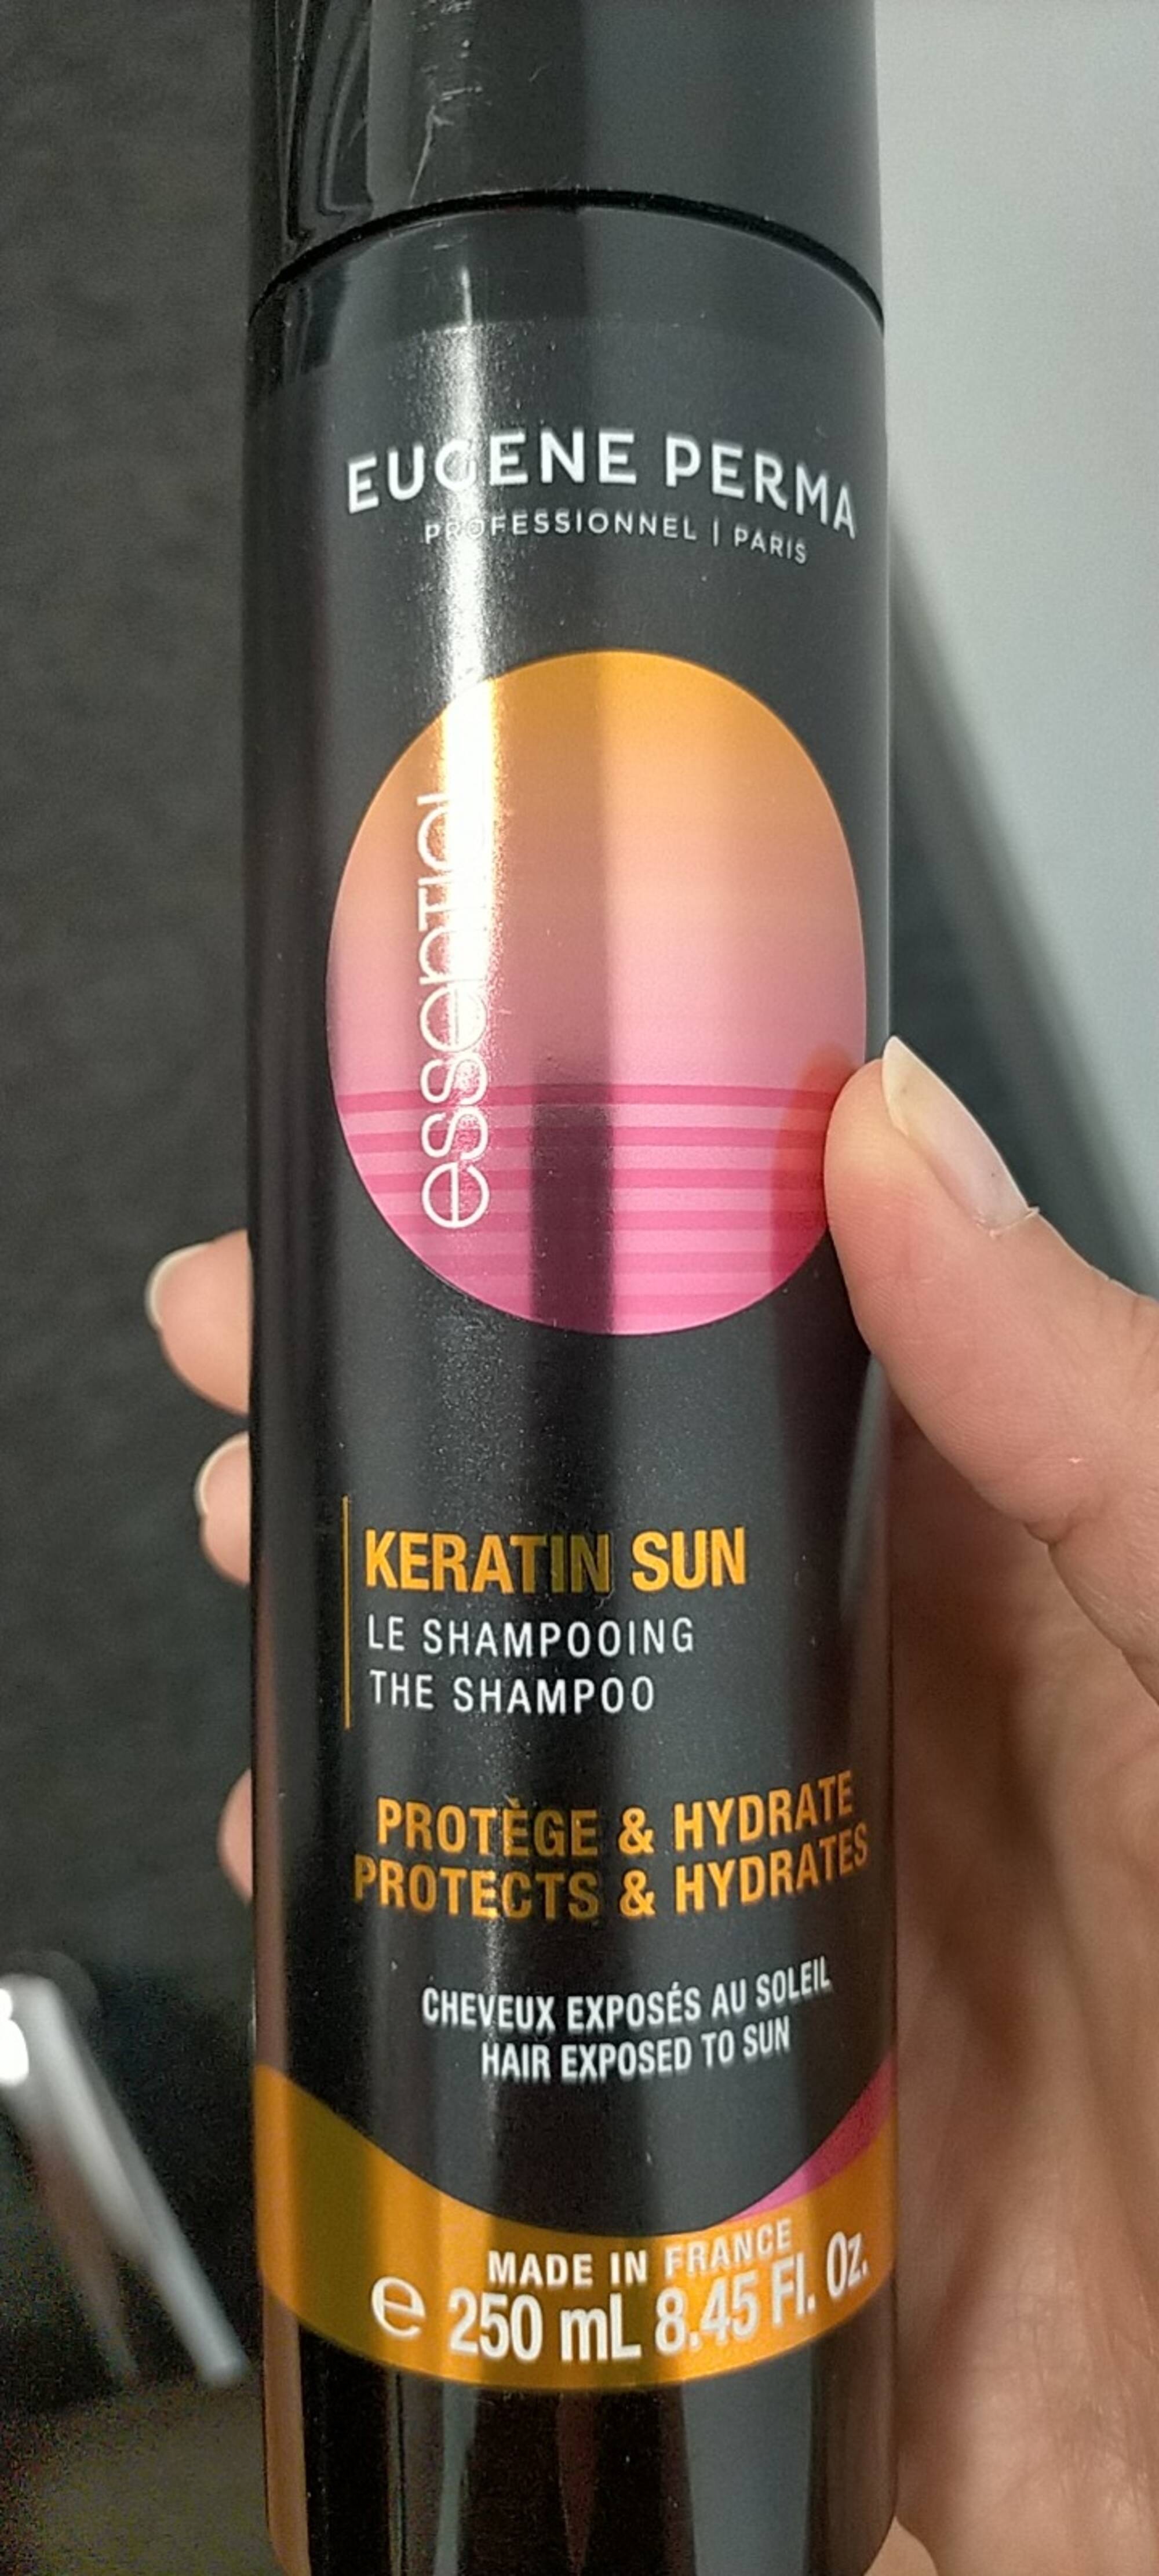 EUGÈNE PERMA - Keratin sun - Le shampooing